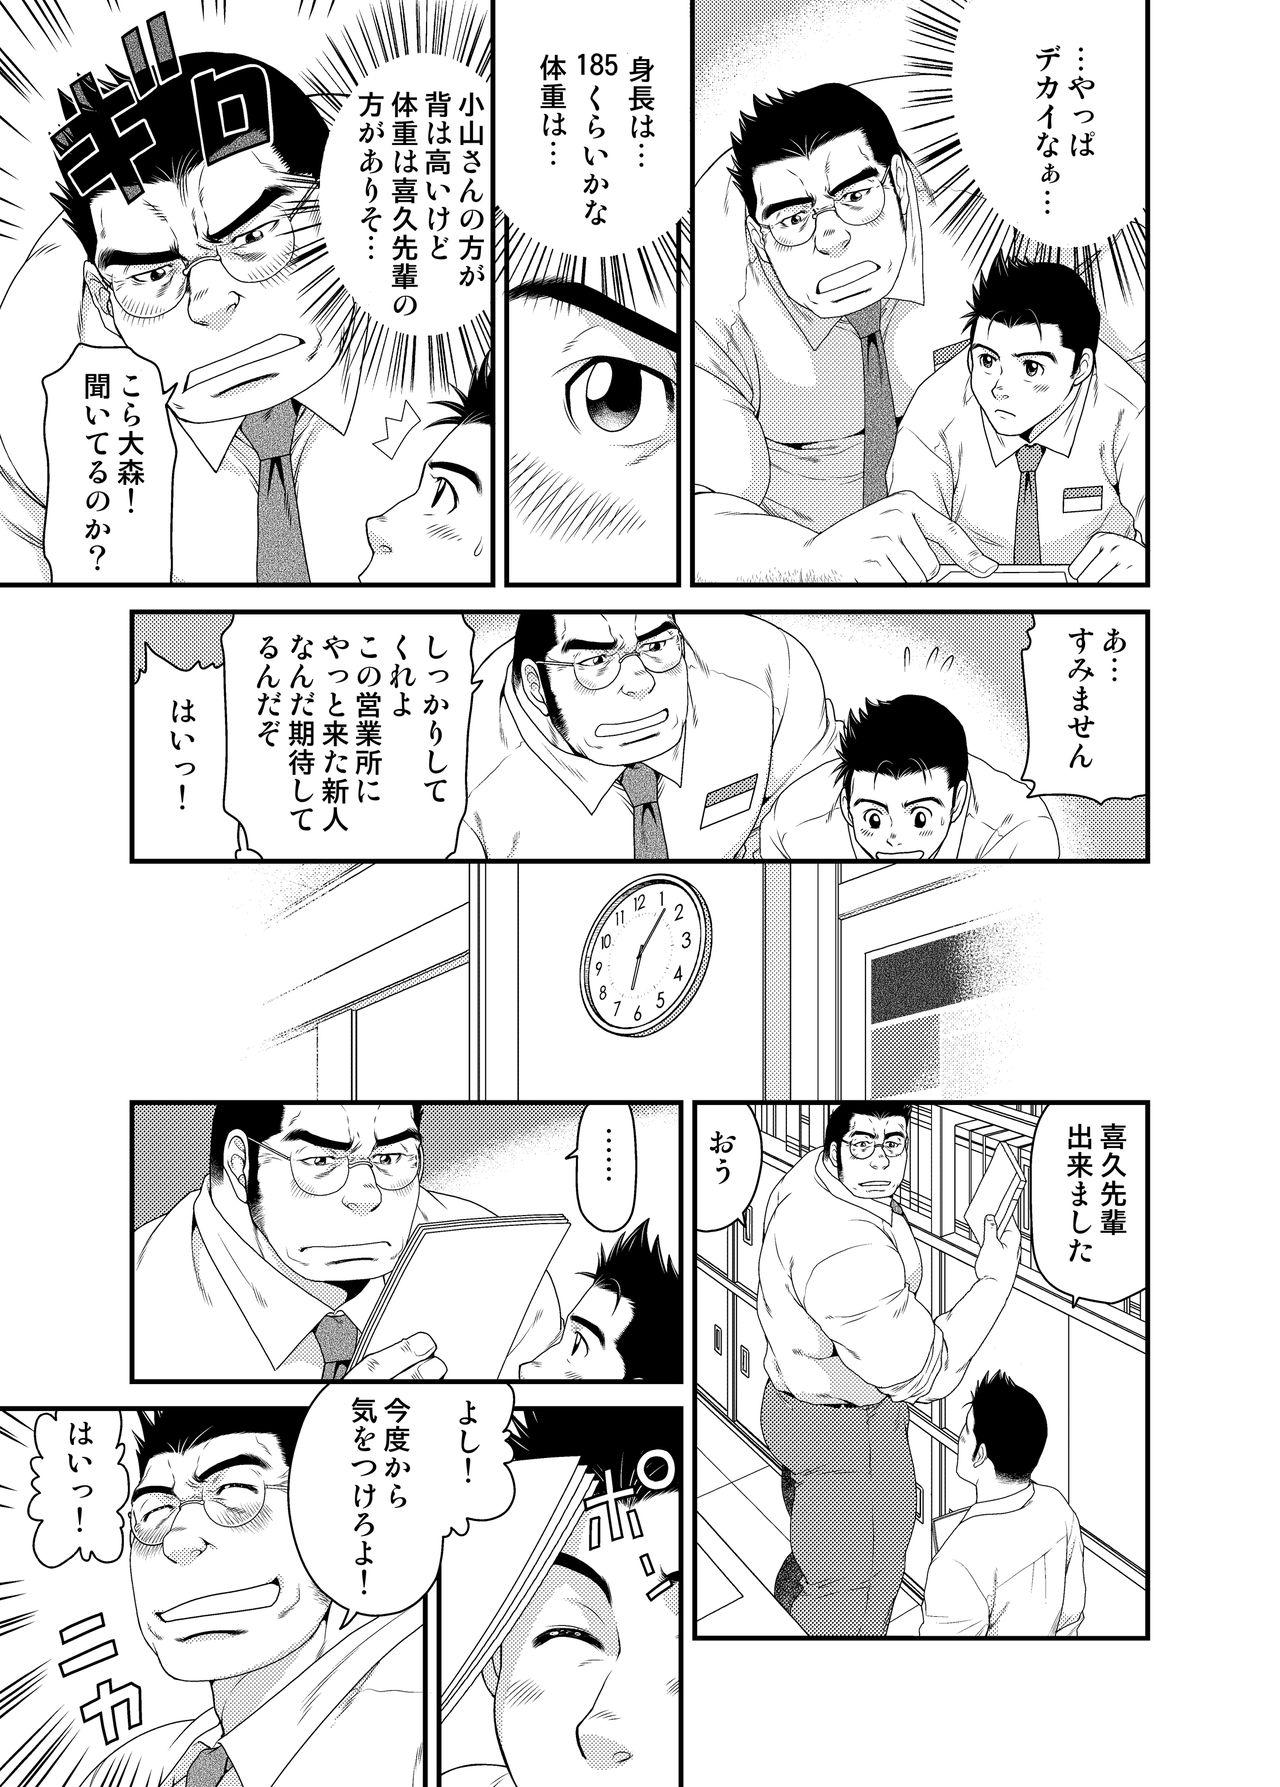 Nerd Kikujirou no Natsu Yanks Featured - Page 4